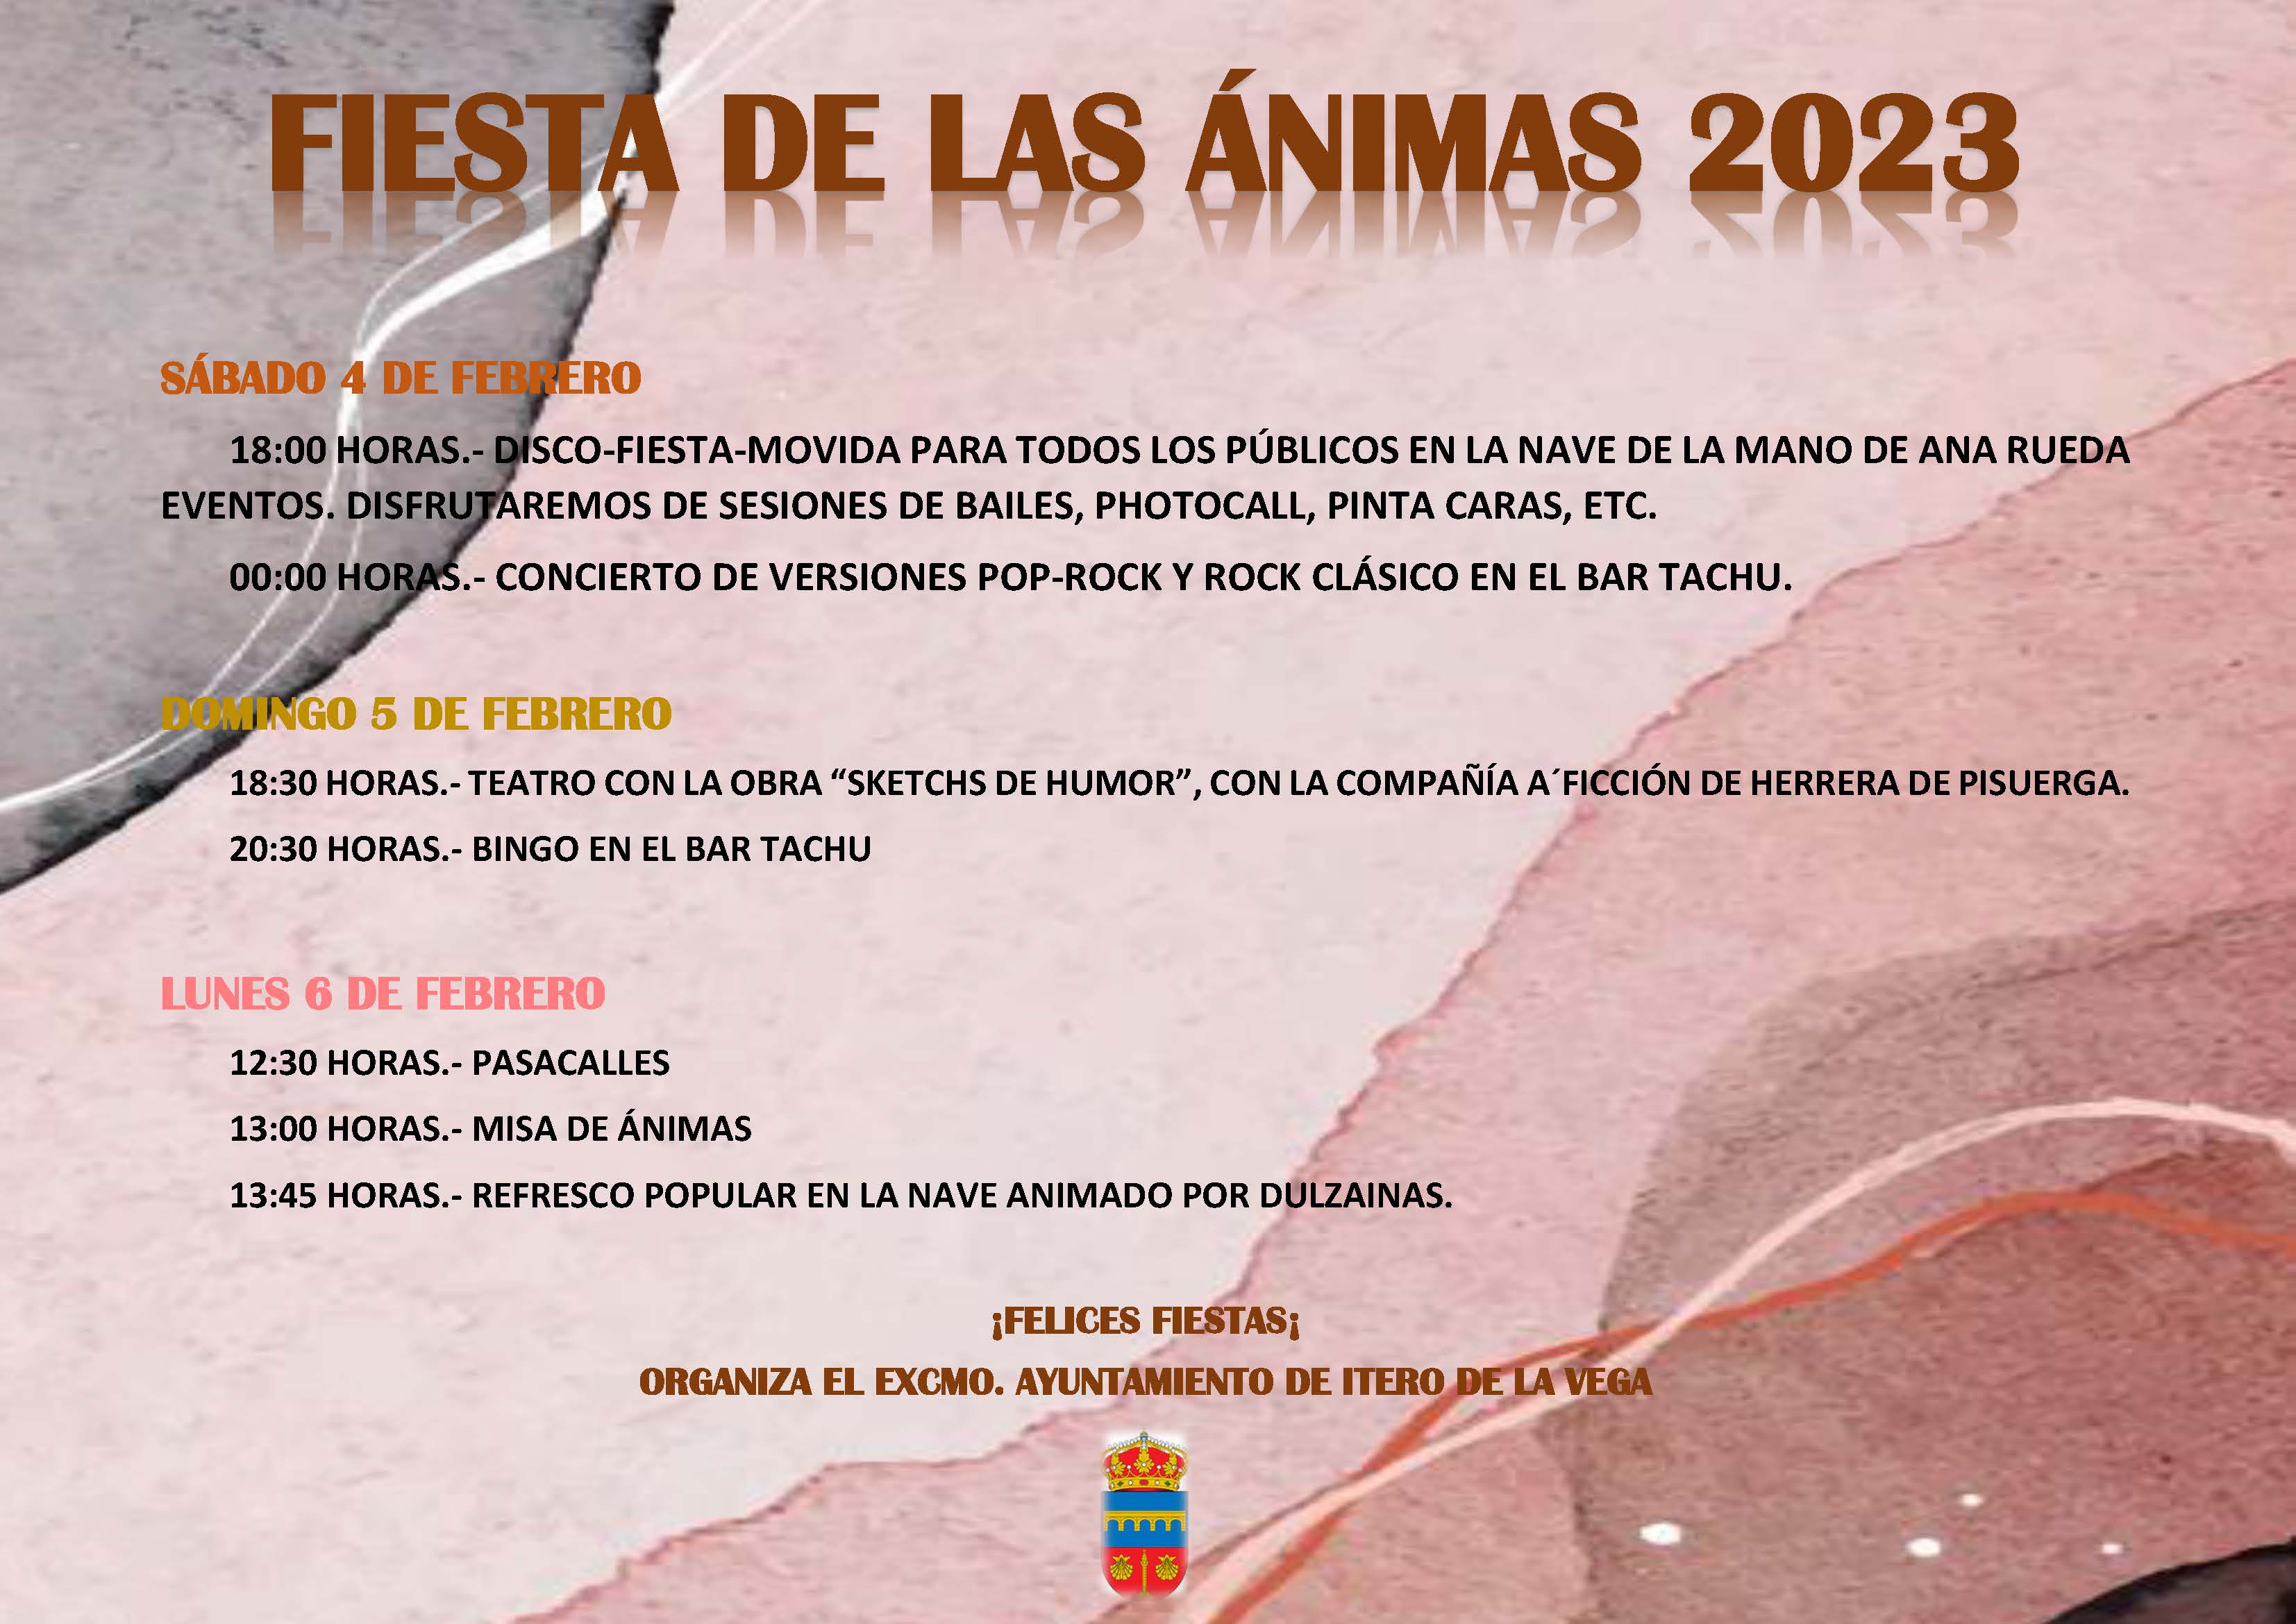 PROGRAMA FIESTAS DE LAS ÁNIMAS 2023